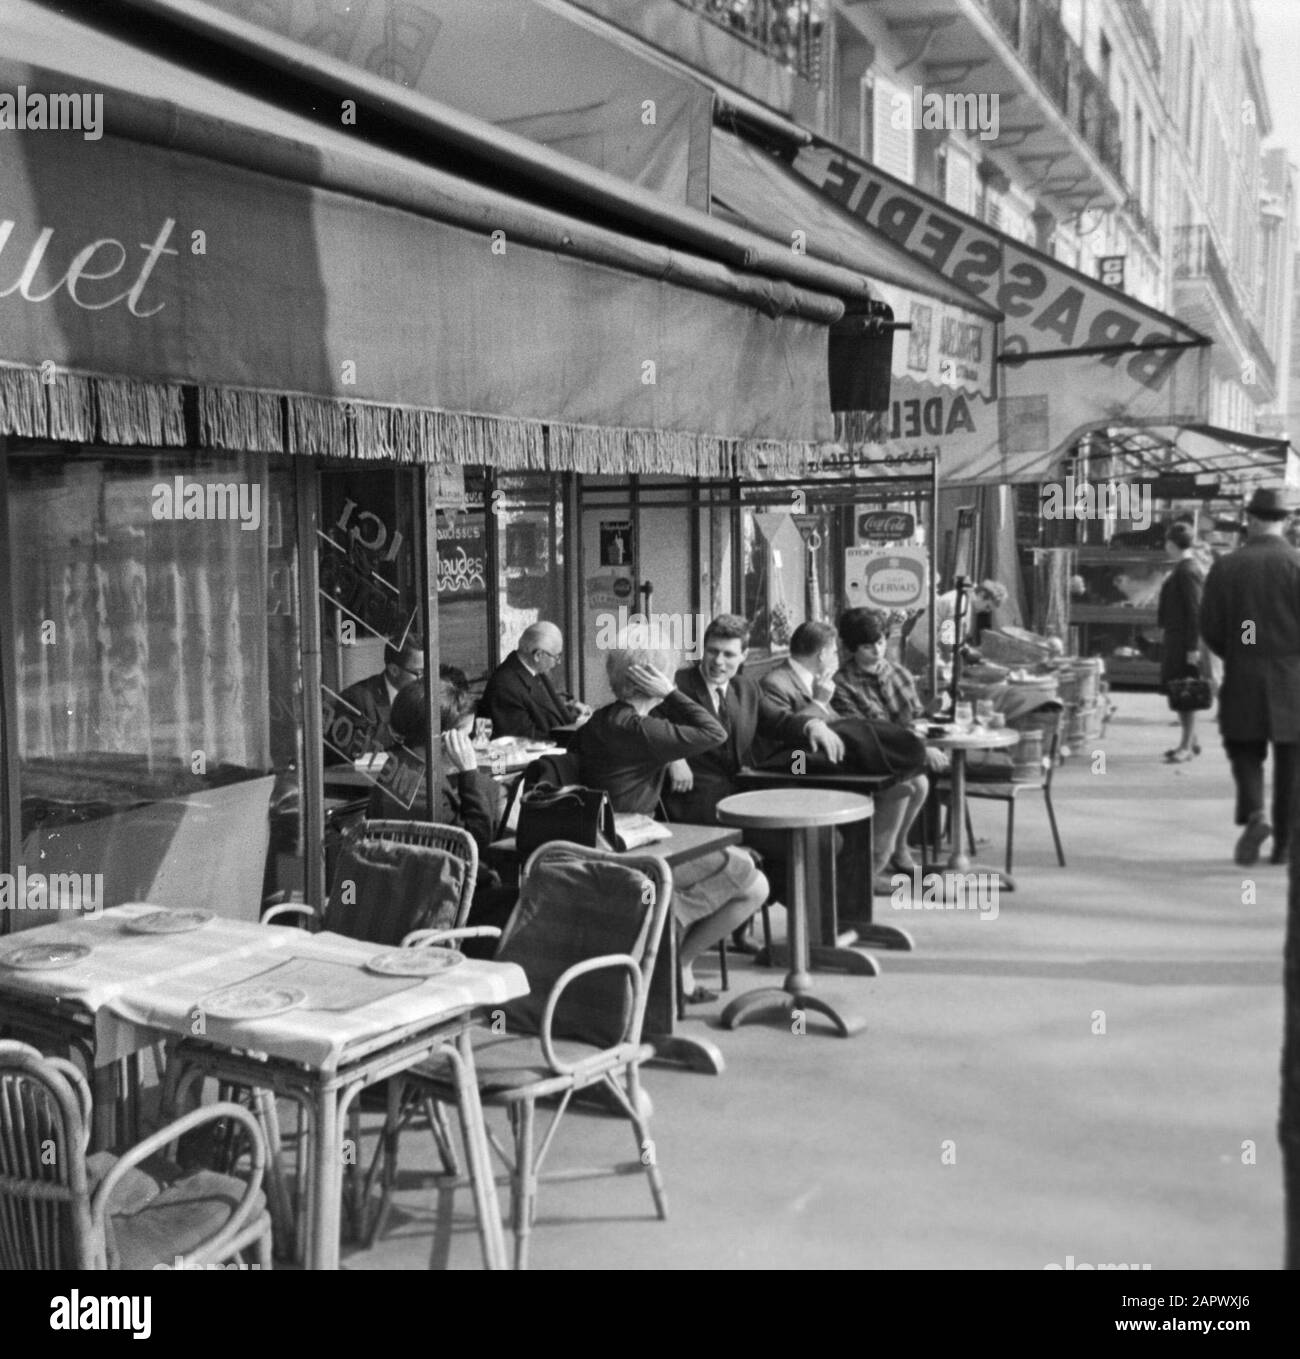 Pariser Bilder [Das Straßenleben von Paris] Auf der Terrasse Datum: 1965 Ort: Frankreich, Paris Stichwörter: Cafés, Straßenplastiken, Terrassen Stockfoto